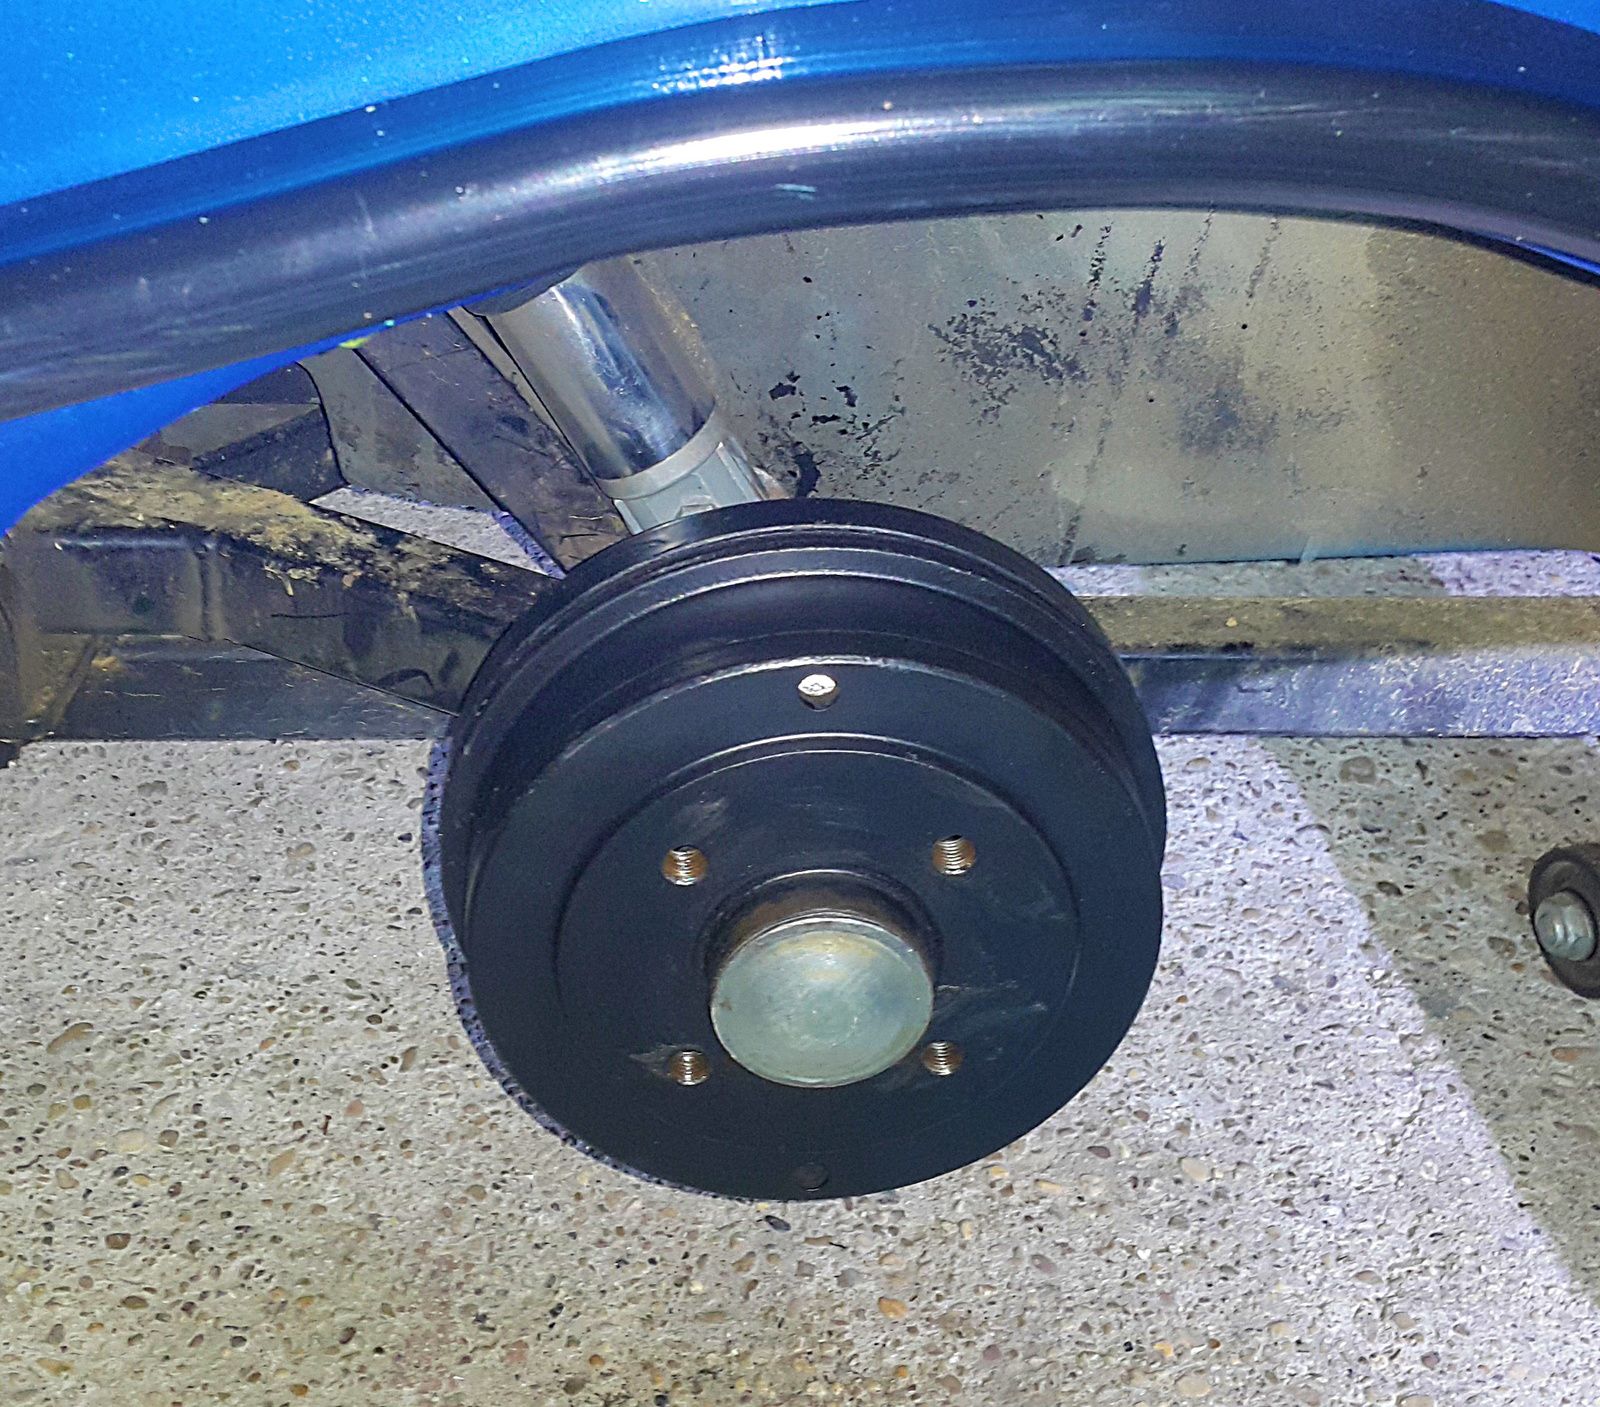 Remplacement de valve Tubeless sans démontage du pneu - Berna1201